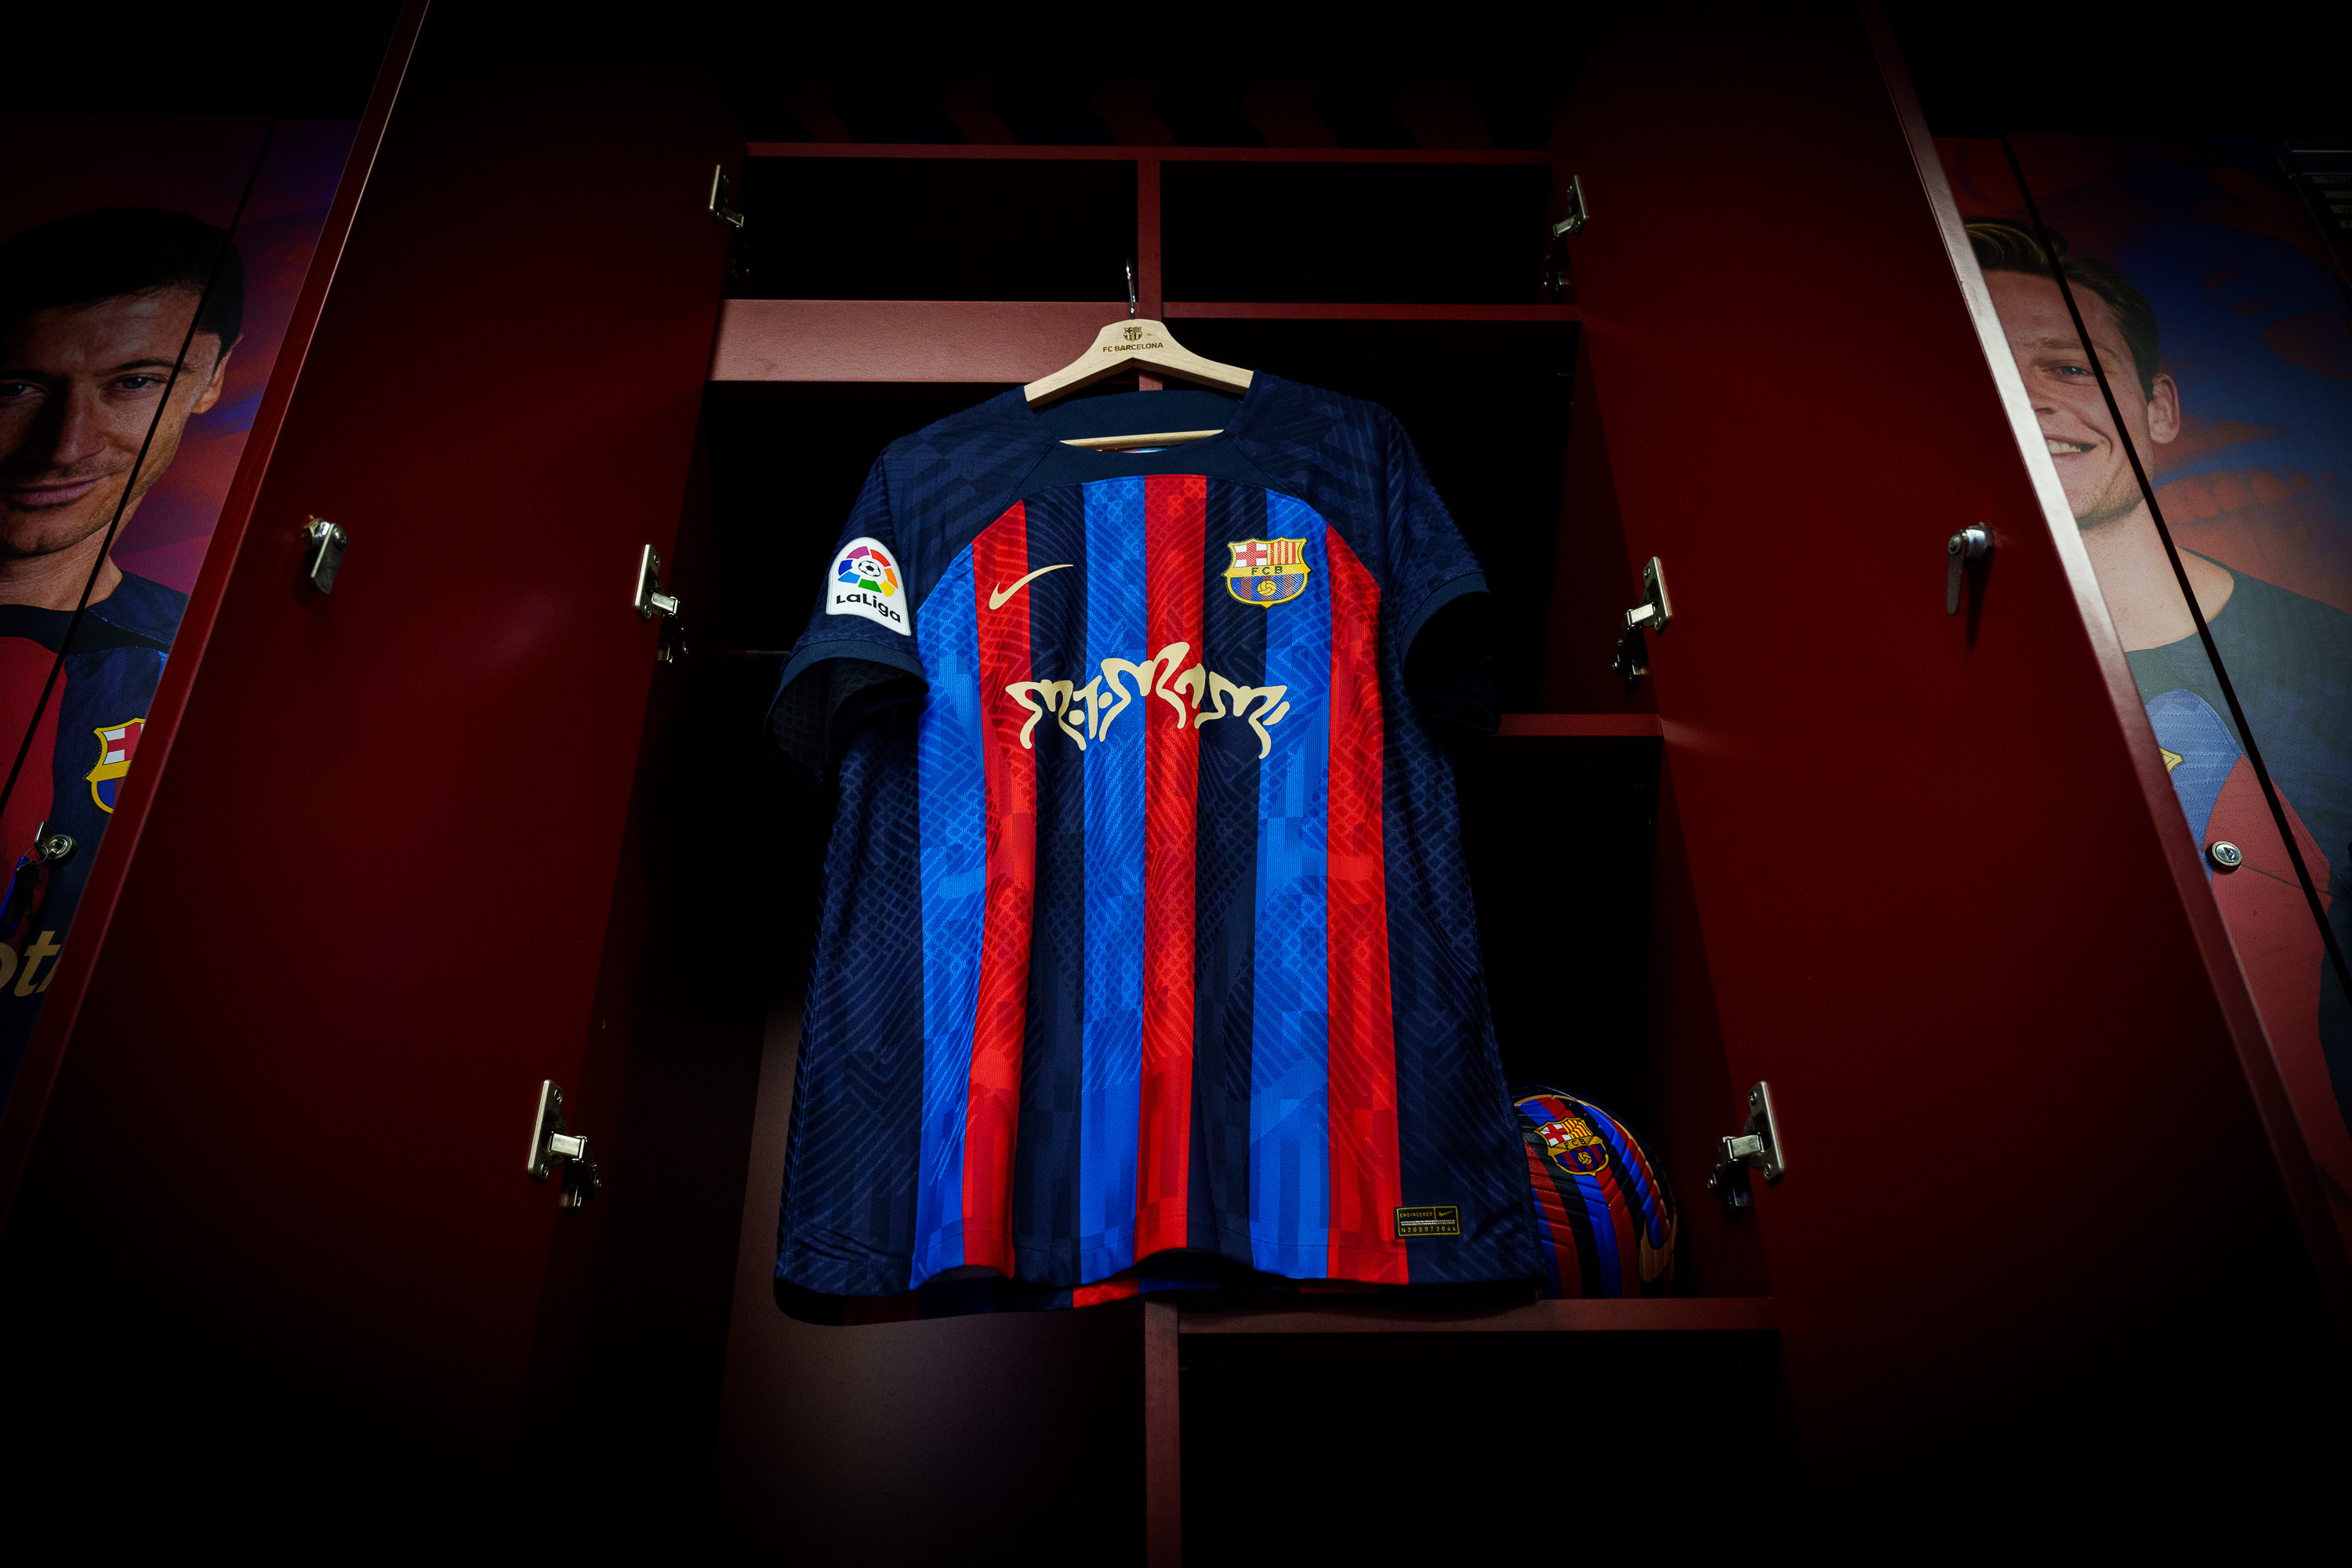 Las inéditas imágenes de la camiseta con logo de “Motomami” de Rosalía que el FC Barcelona utilizará durante el Clásico